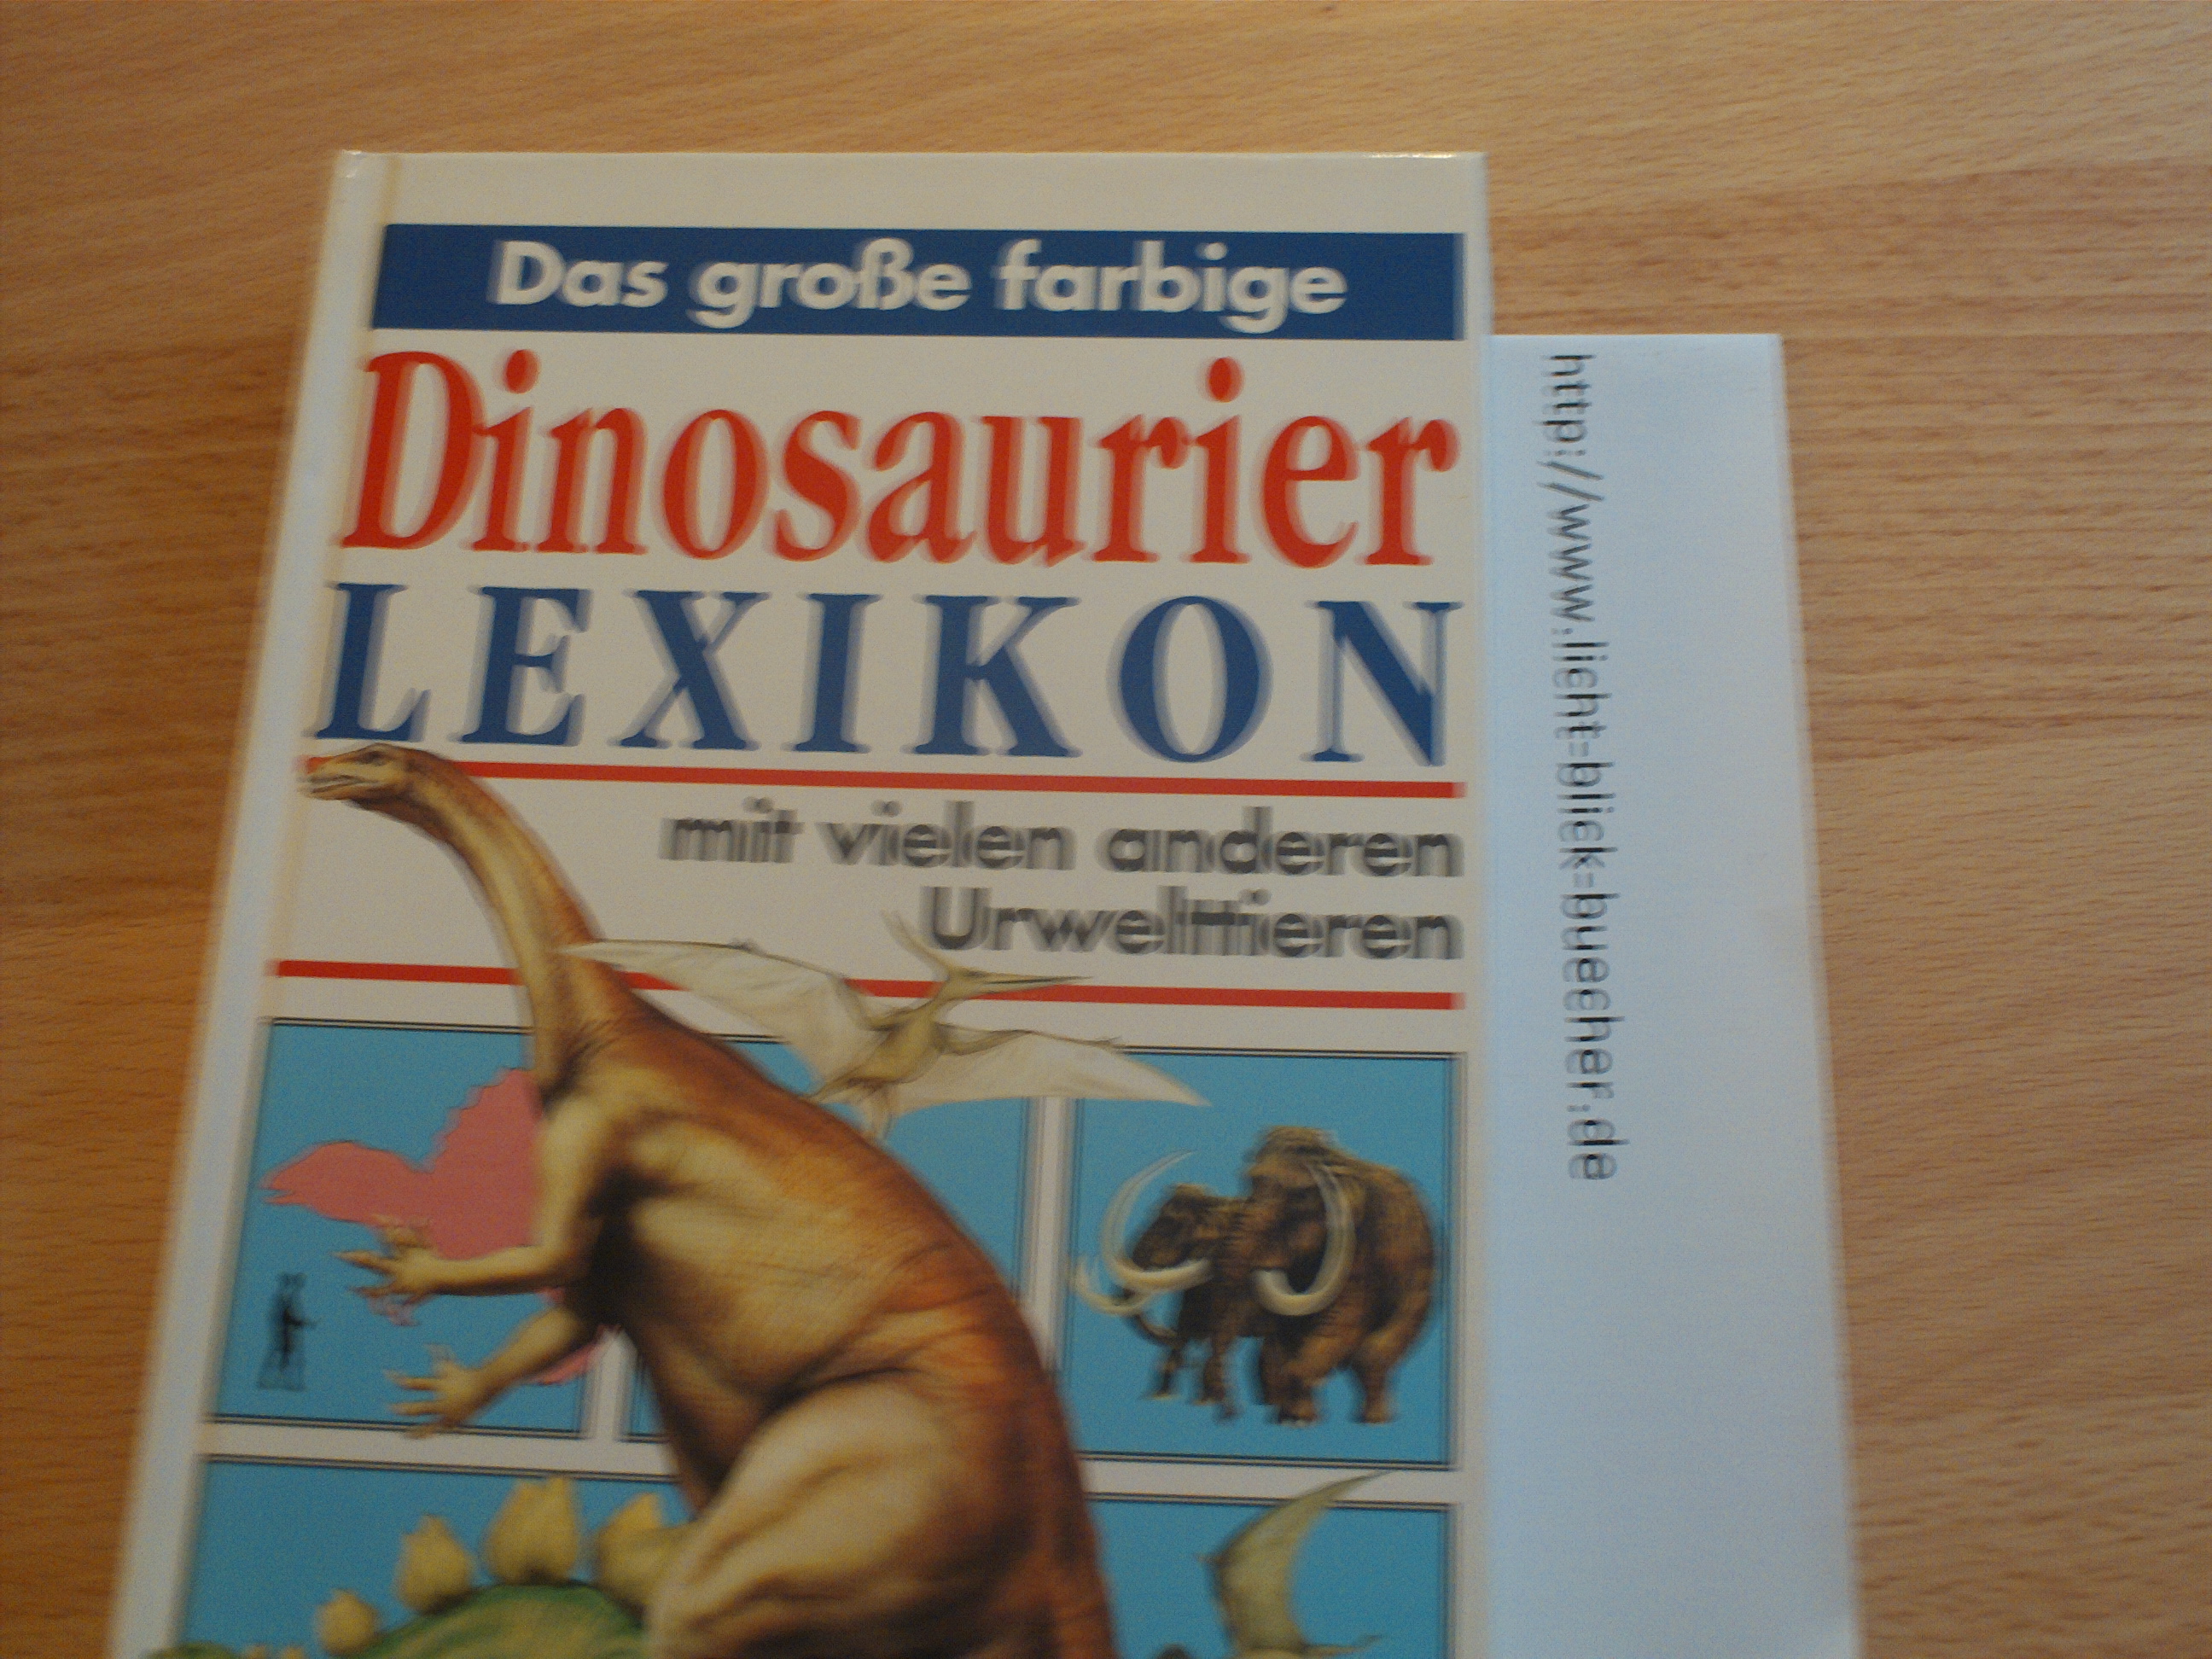 Das grosse farbige Dinosaurierlexikon und vielen anderen UrwelttierenMichael Benton